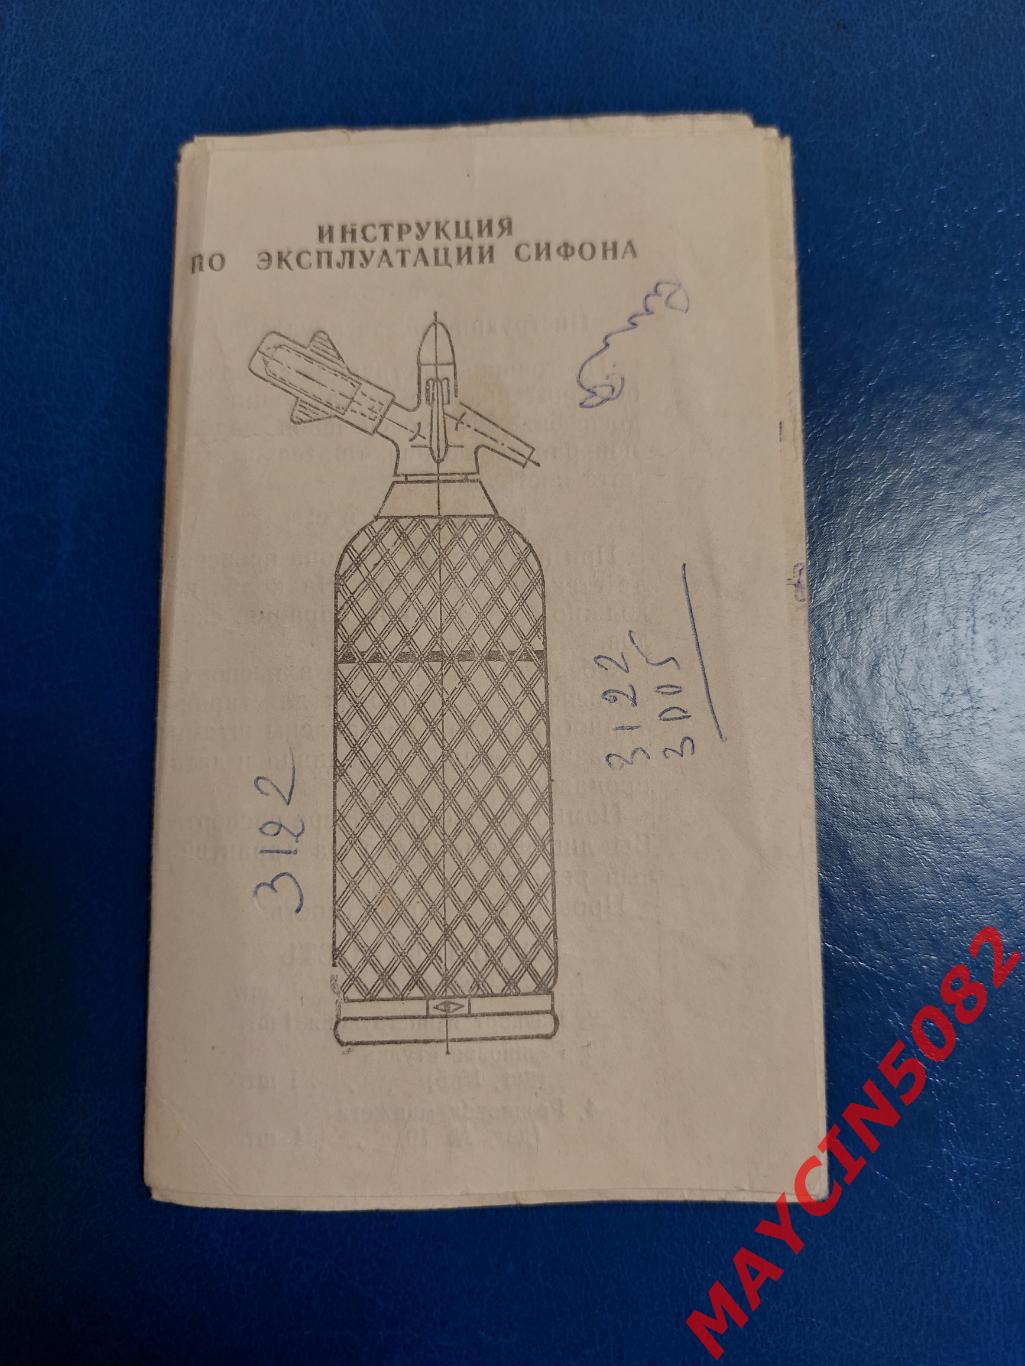 Инструкция по эксплуатации Сифона. 1978 год.